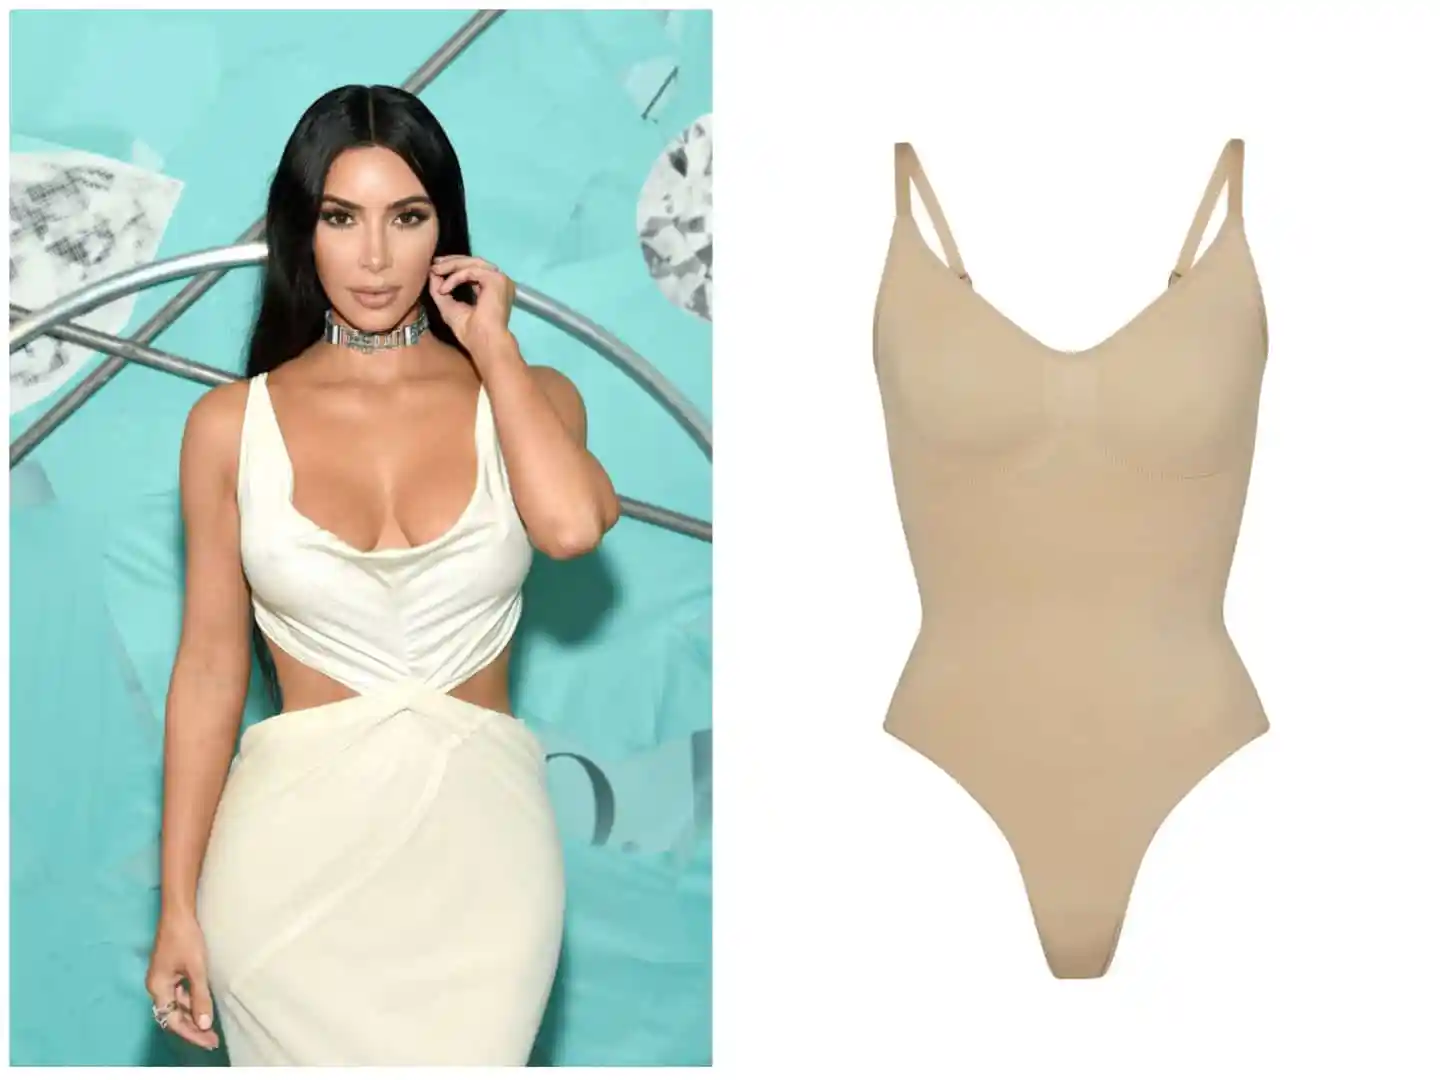 Kim Kardashian says Skims is making its popular bodysuit more